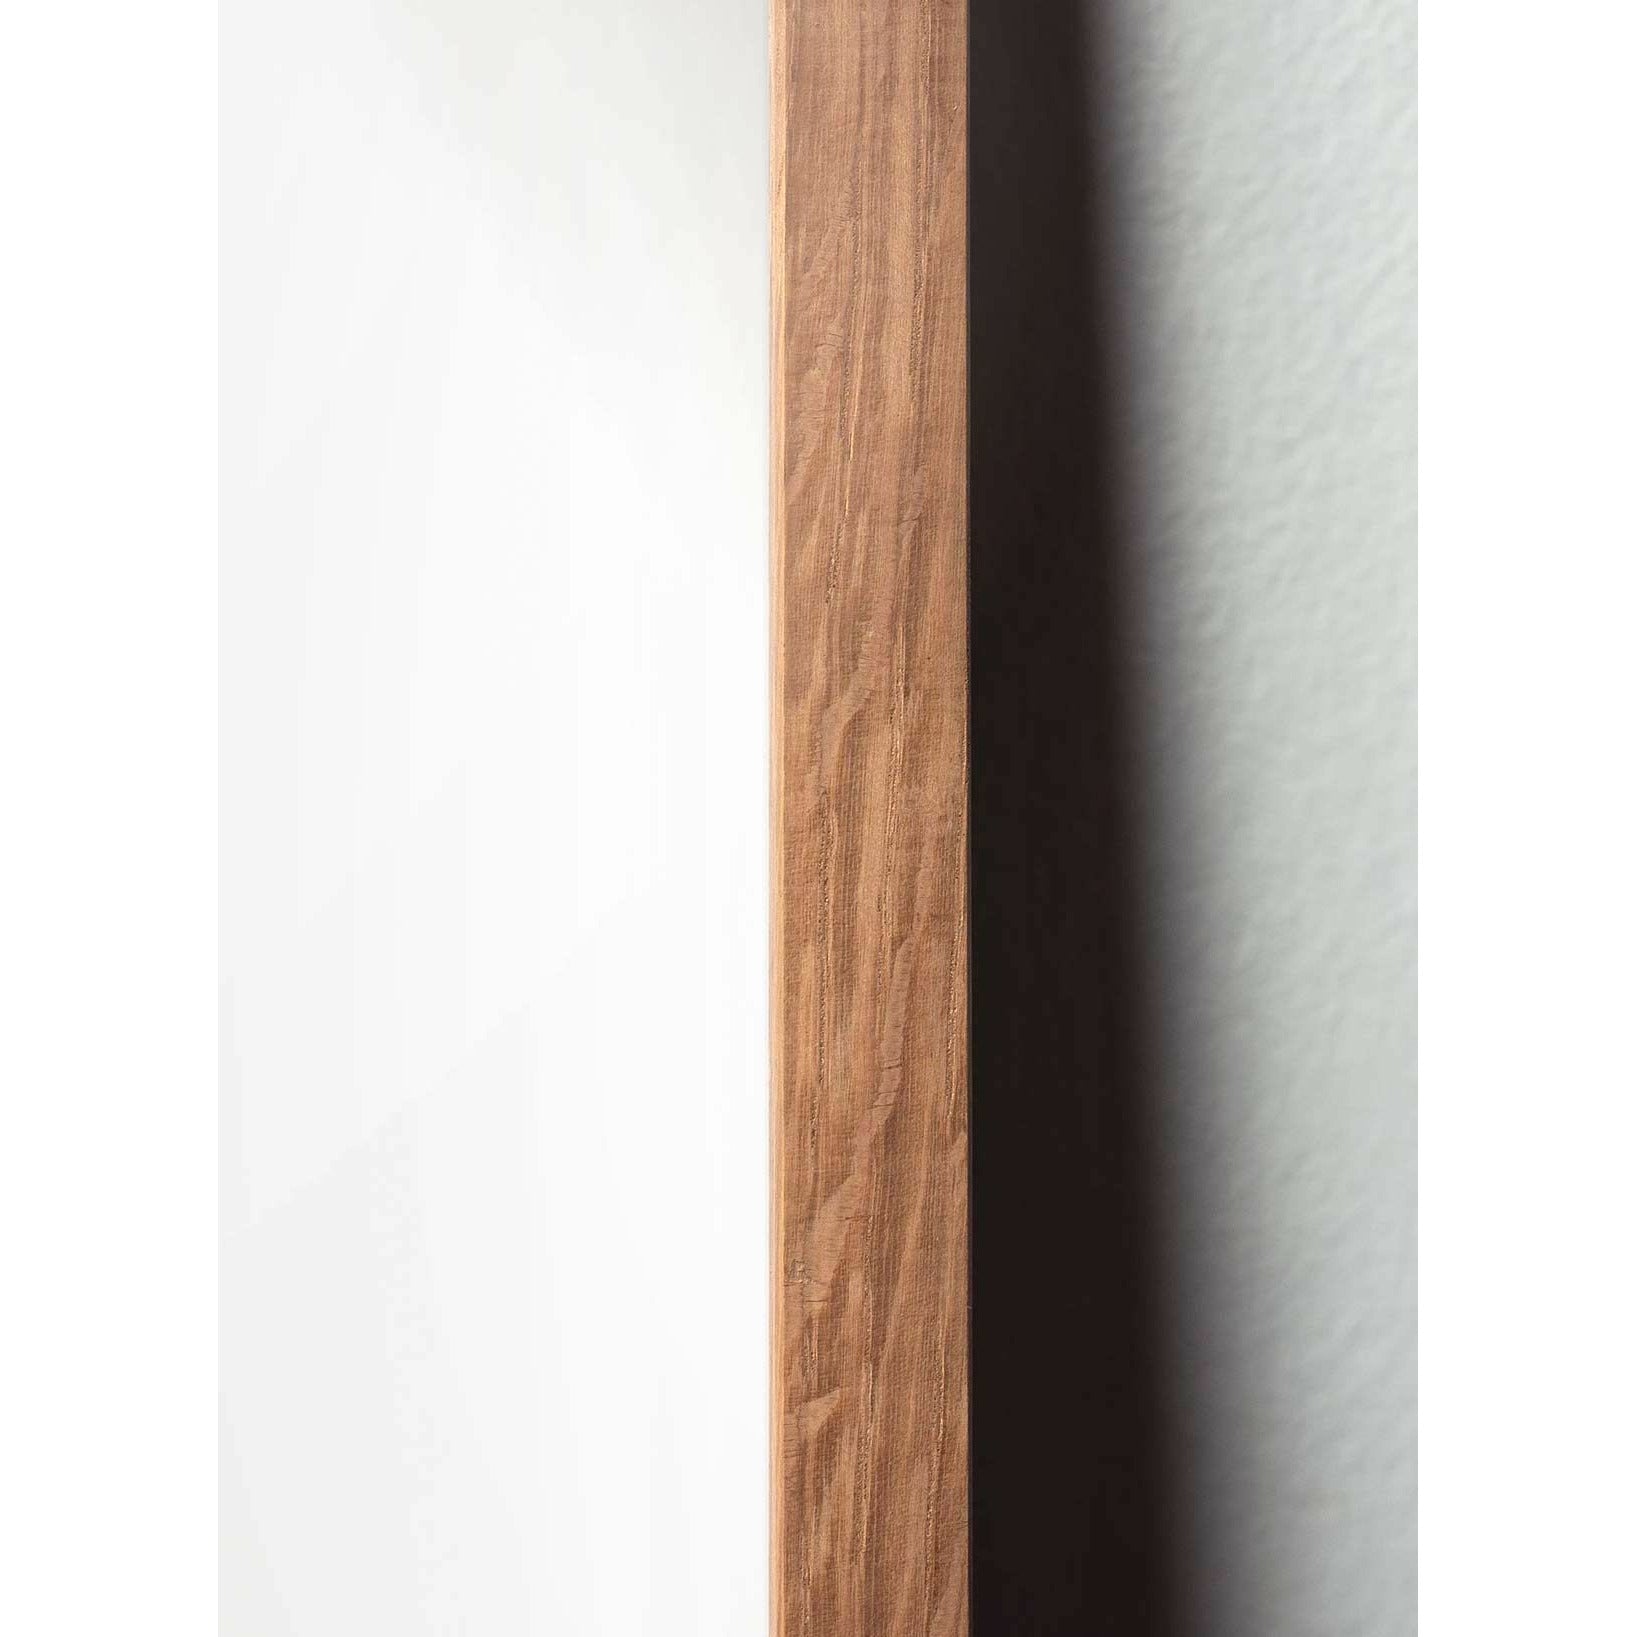 brainchild Pudota klassinen juliste, kehys, joka on valmistettu kevyestä puusta 30x40 cm, tummansininen tausta